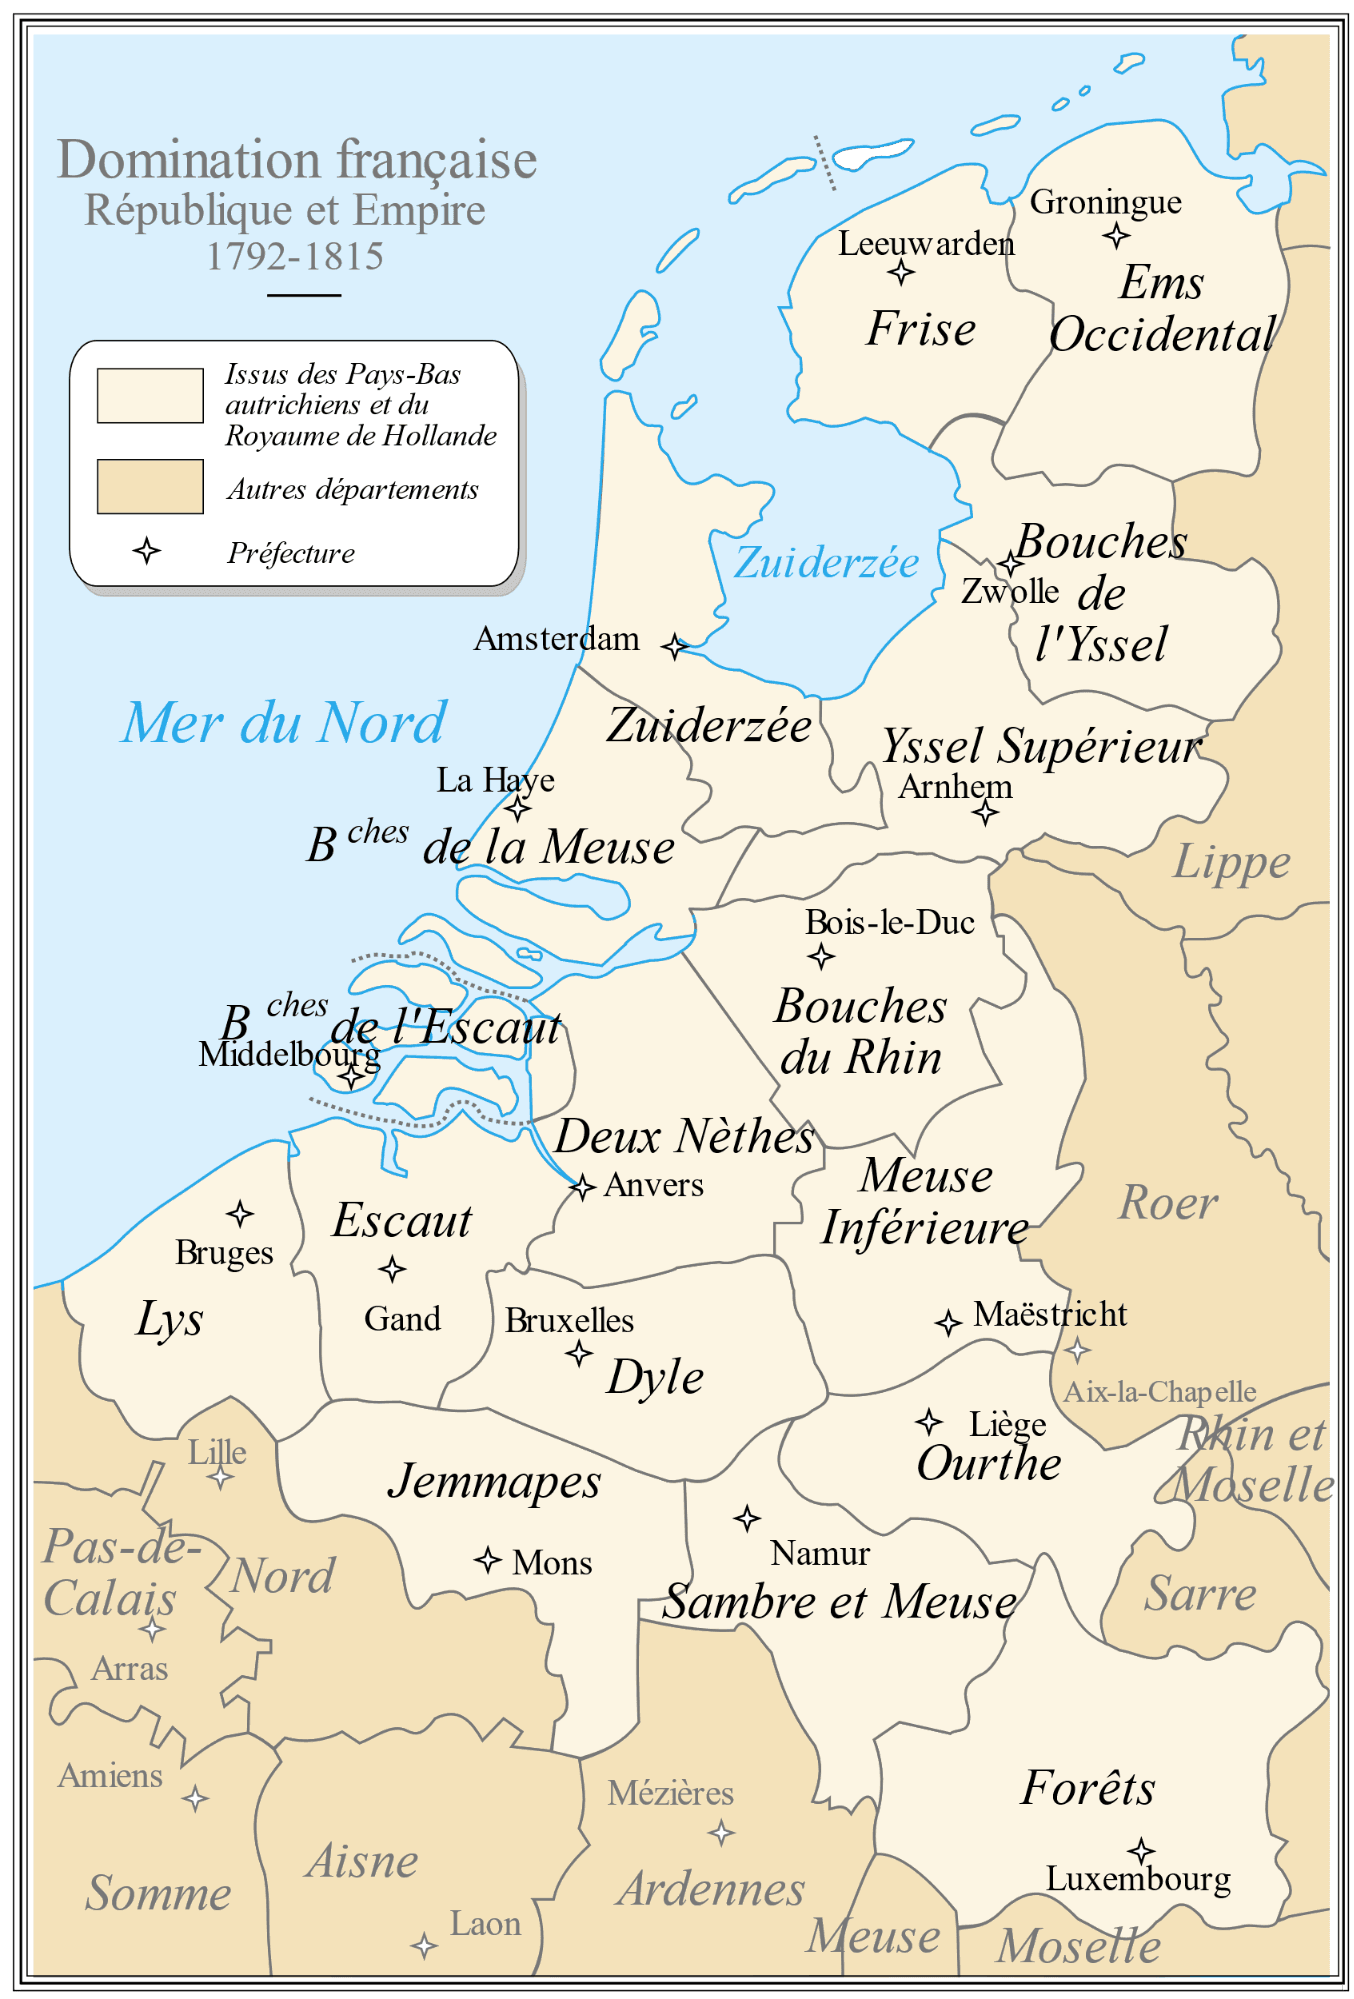 Départements de l'Empire français dans le Nord entre 1792-1815, source : Wikipédia